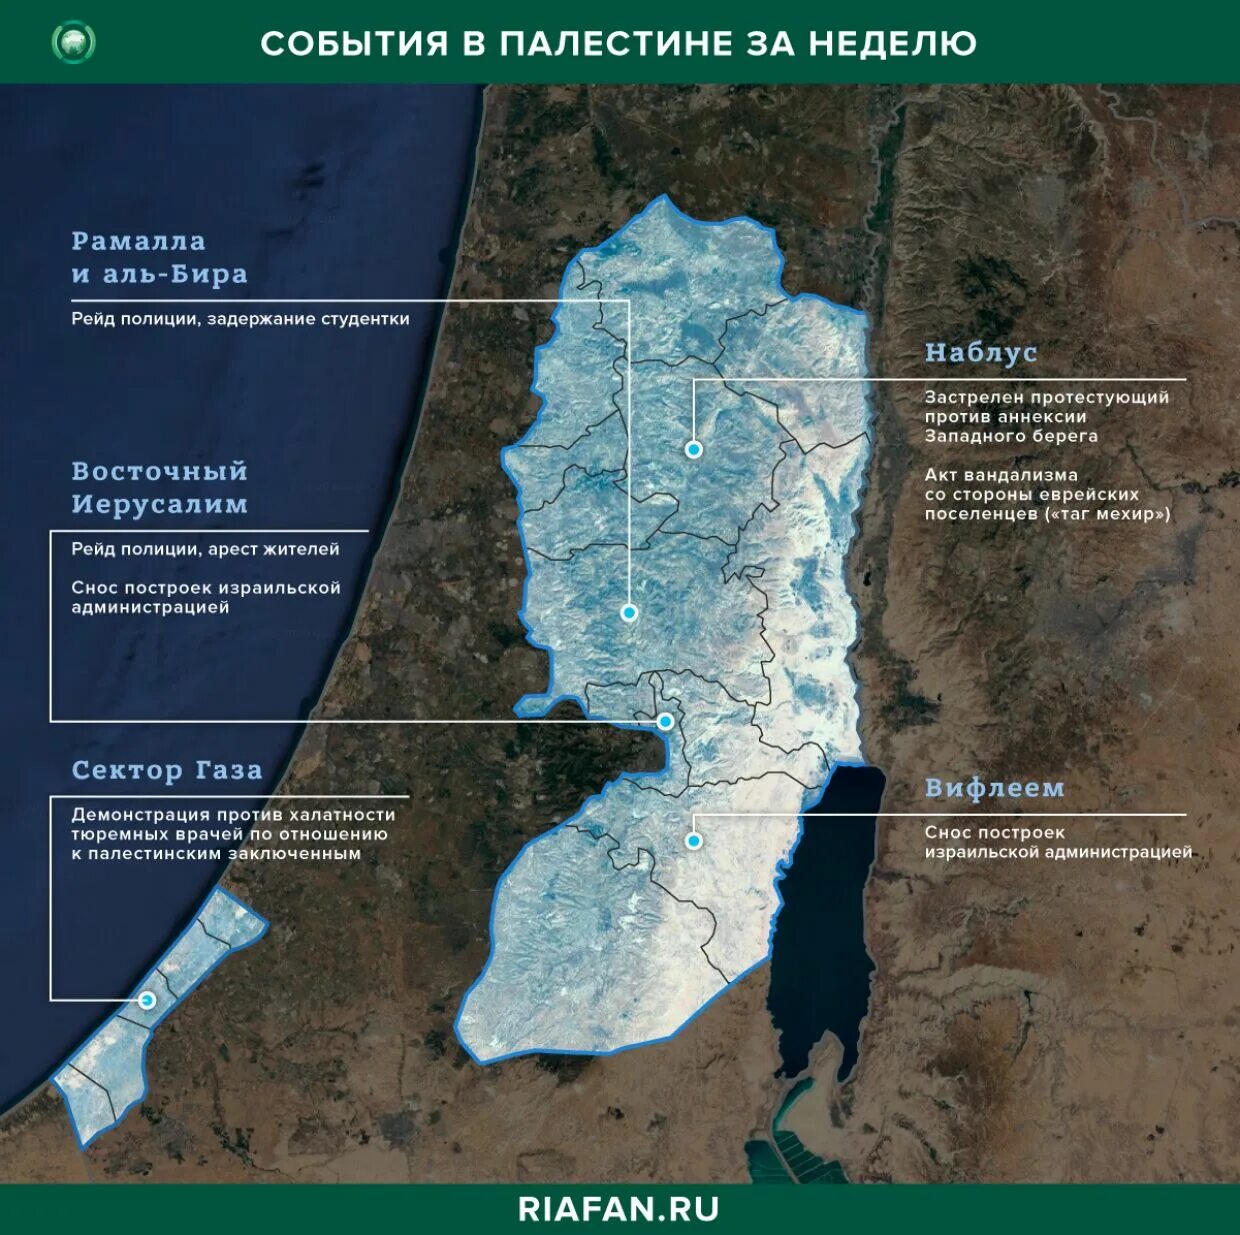 Палестинские территории. Карта Израиля и Палестины и сектора газа. Граница Израиля и Палестины. Палестина границы. Палестинские территории в Израиле.